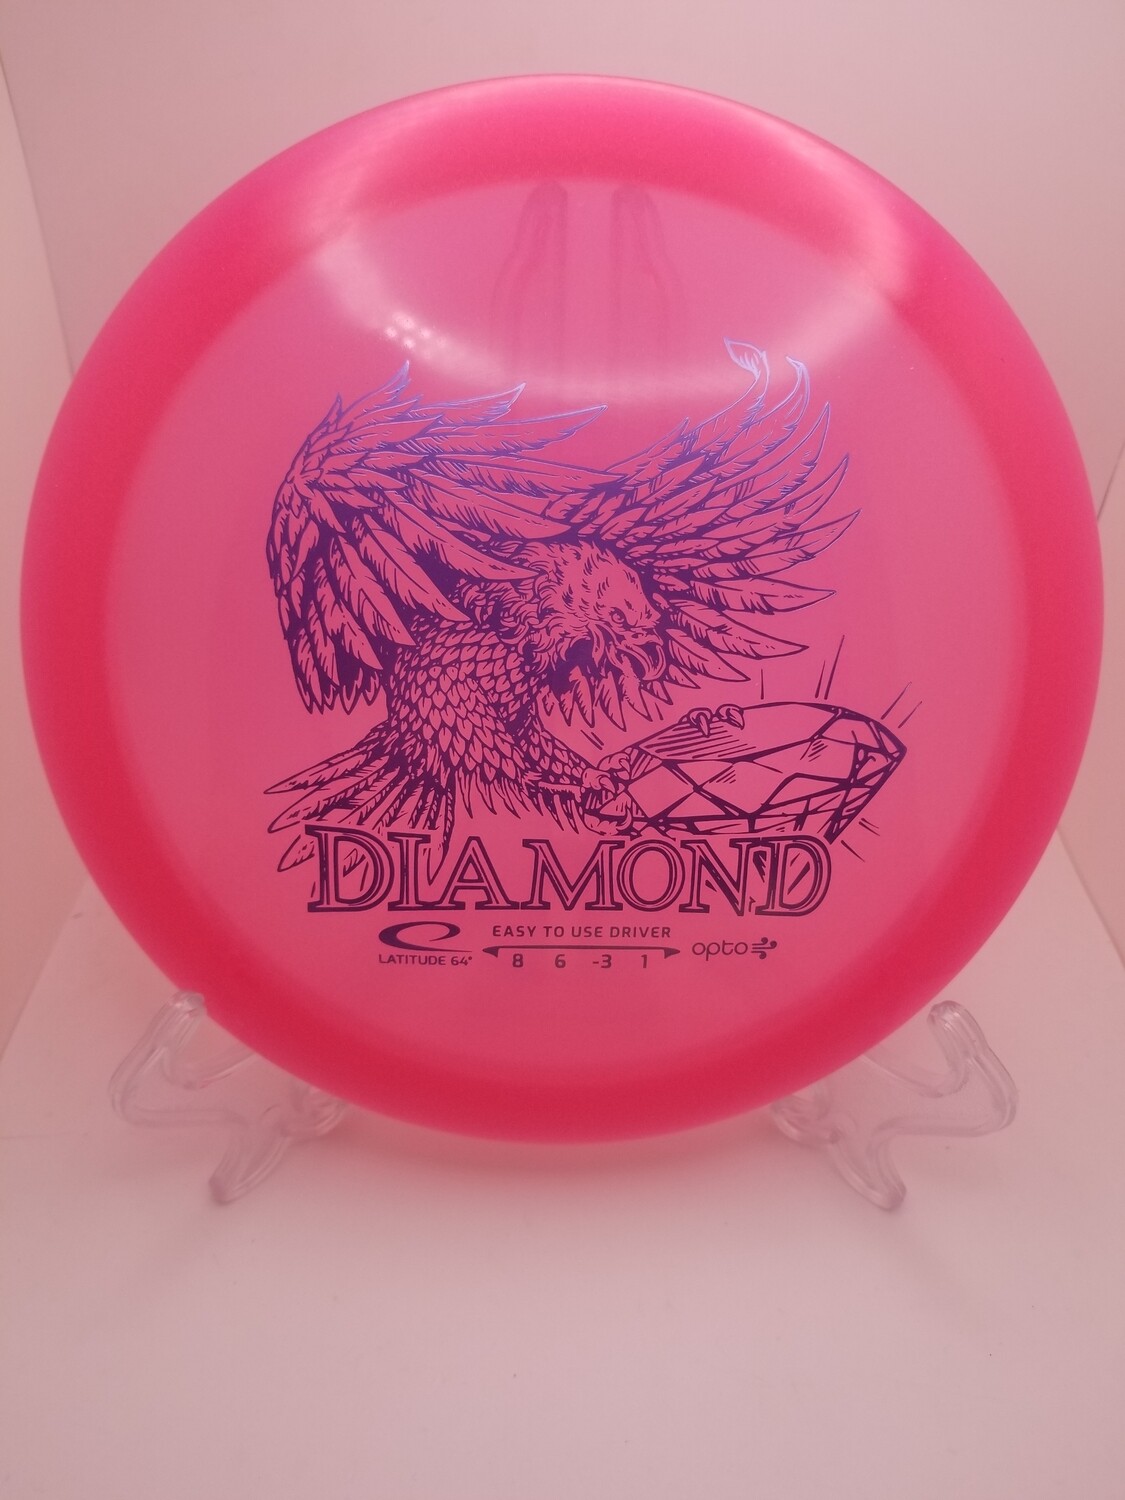 Latitude 64 Diamond Opto Air Pink 146g